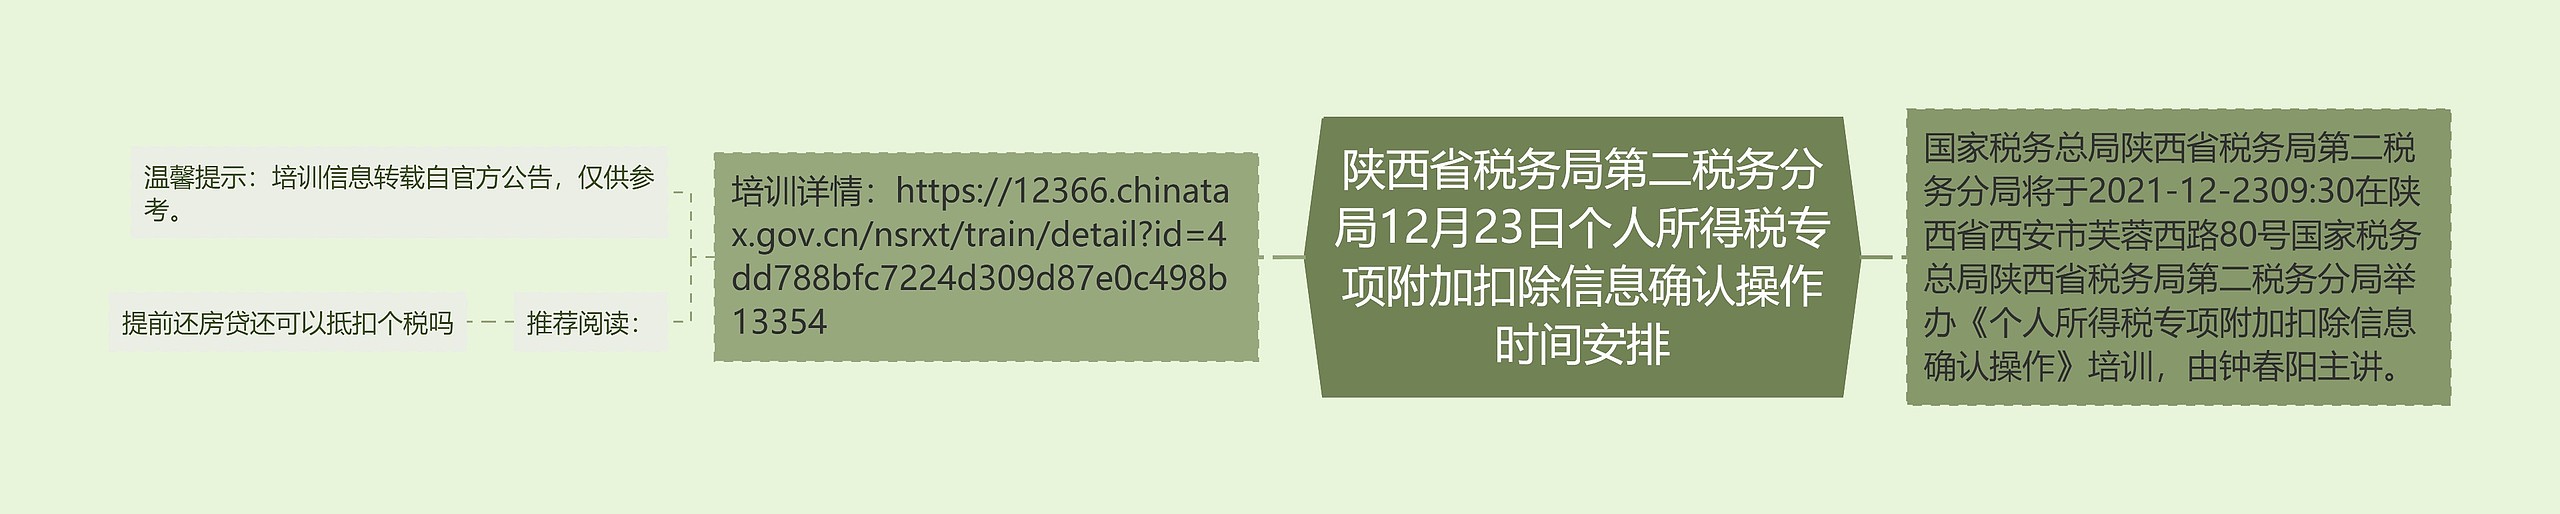 陕西省税务局第二税务分局12月23日个人所得税专项附加扣除信息确认操作时间安排思维导图